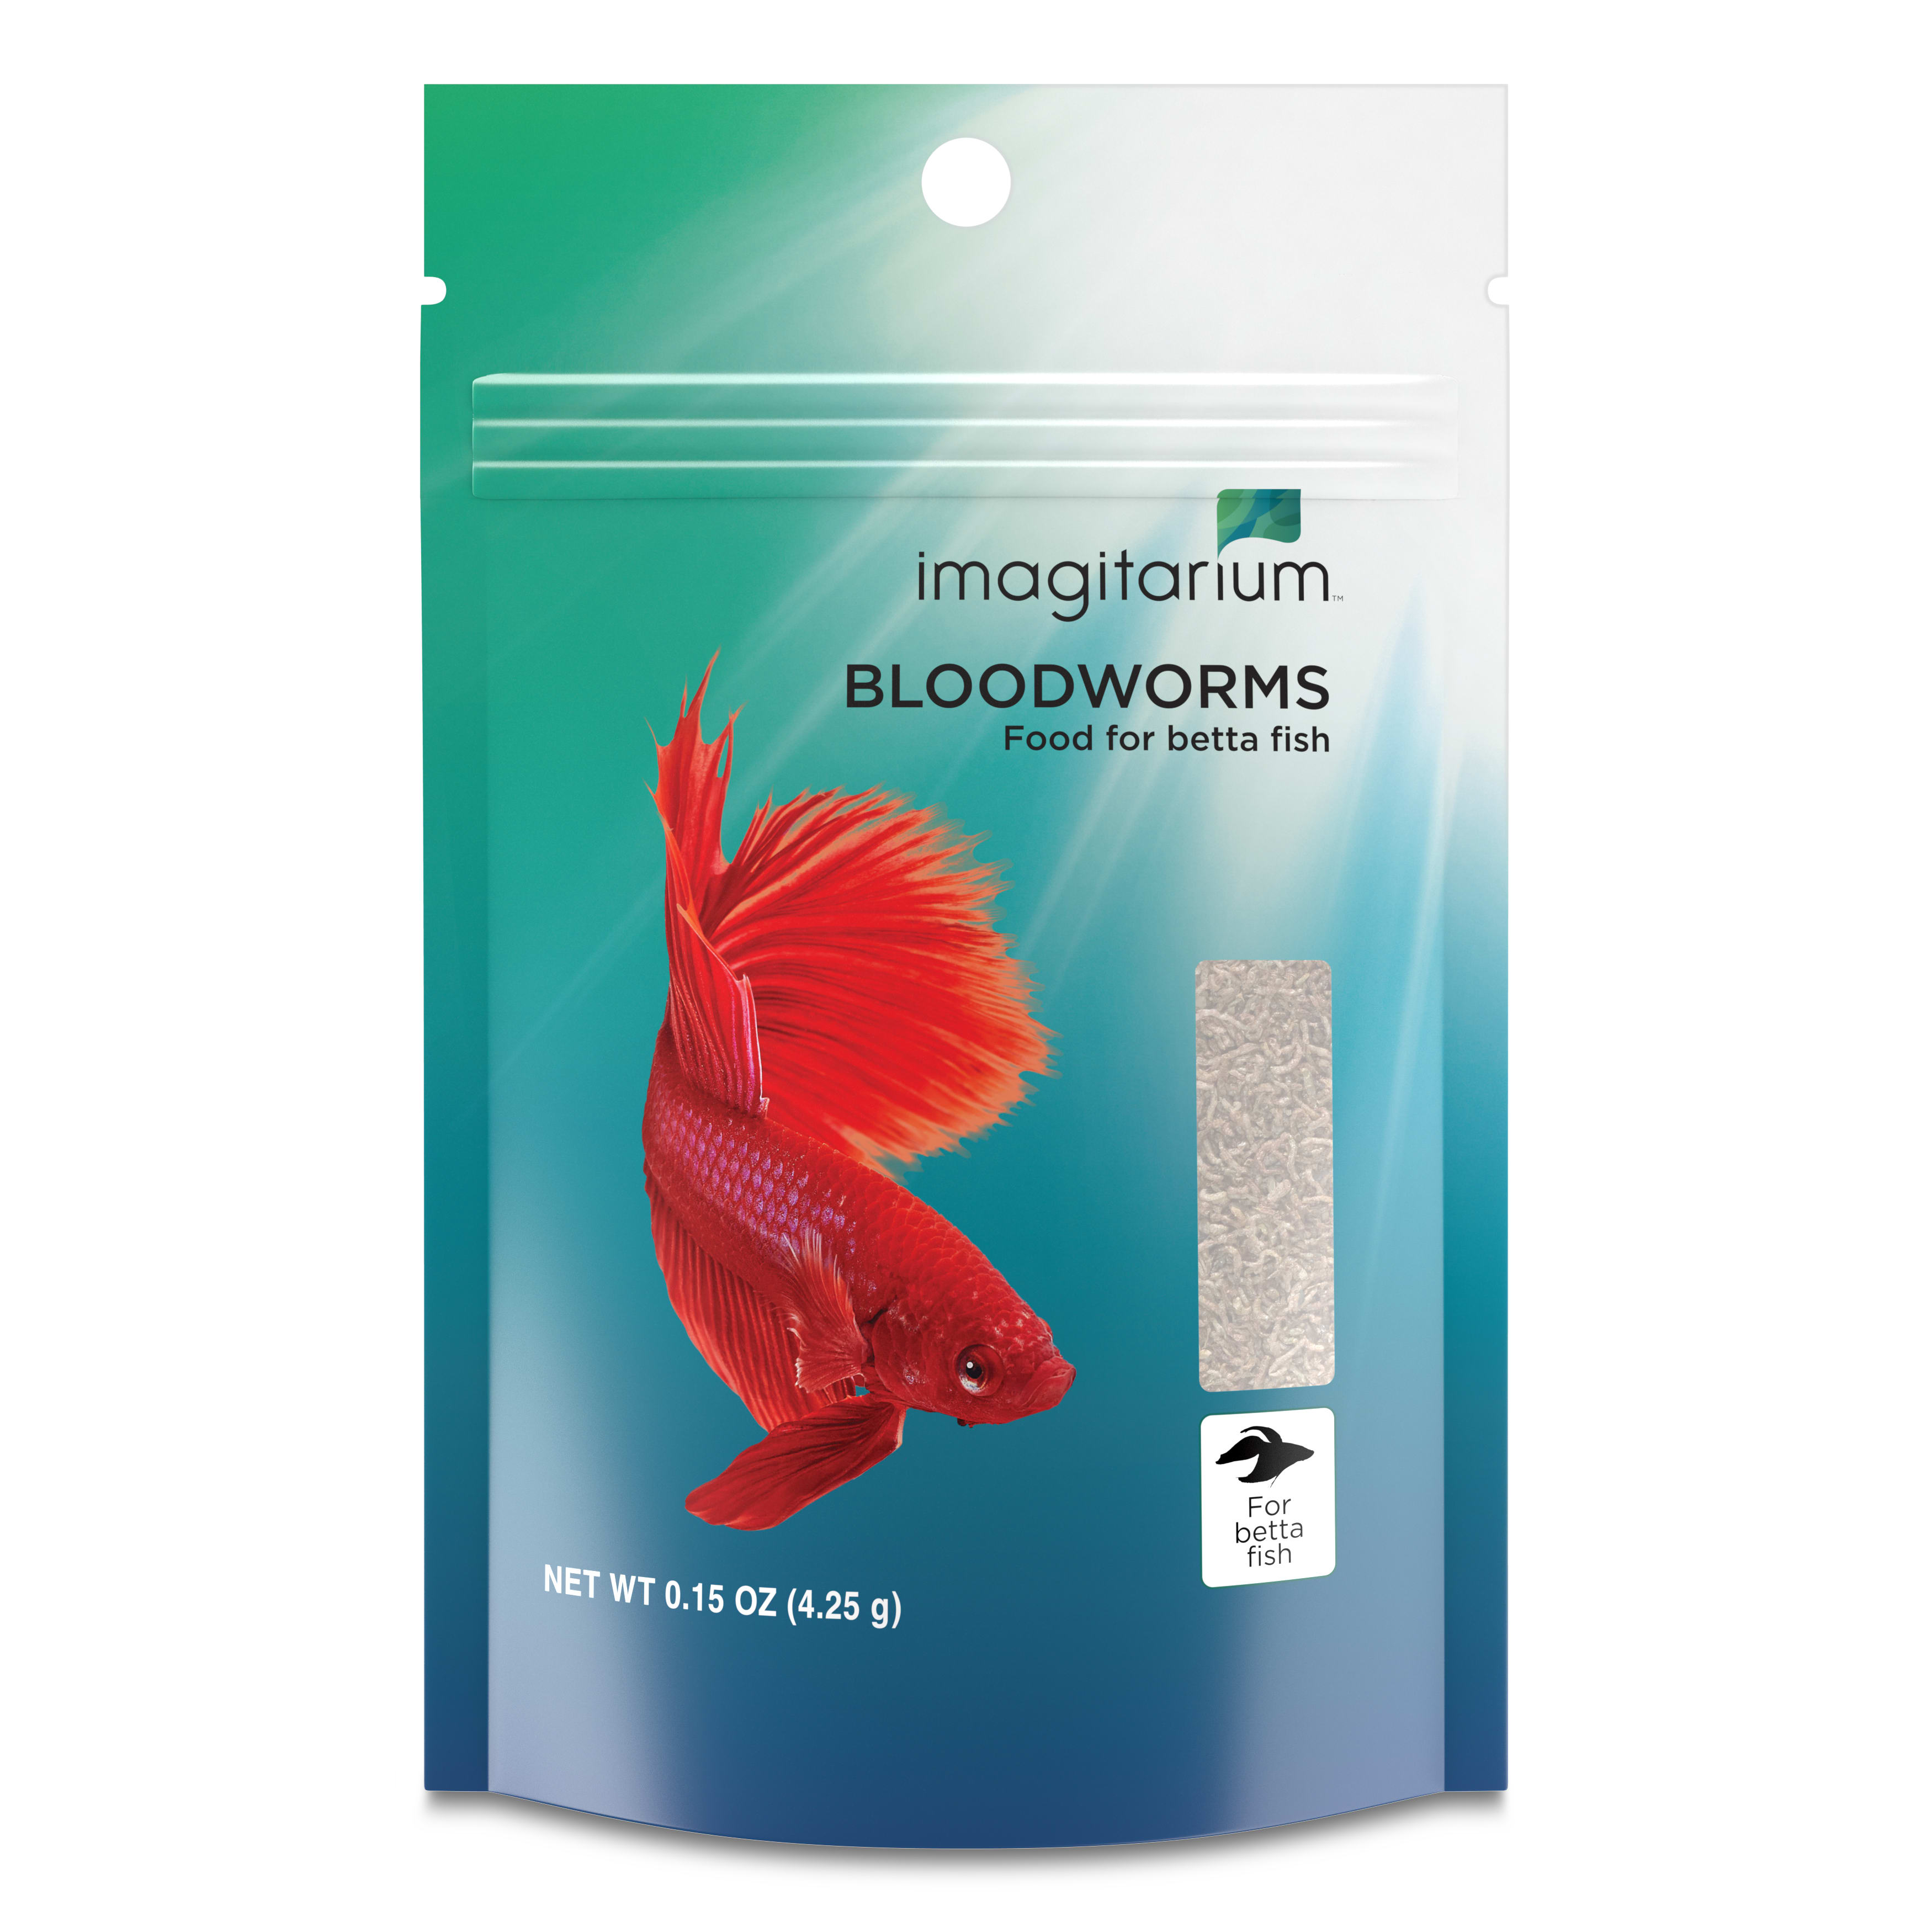 Imagitarium Bloodworms for Betta Fish, 0.15 oz.